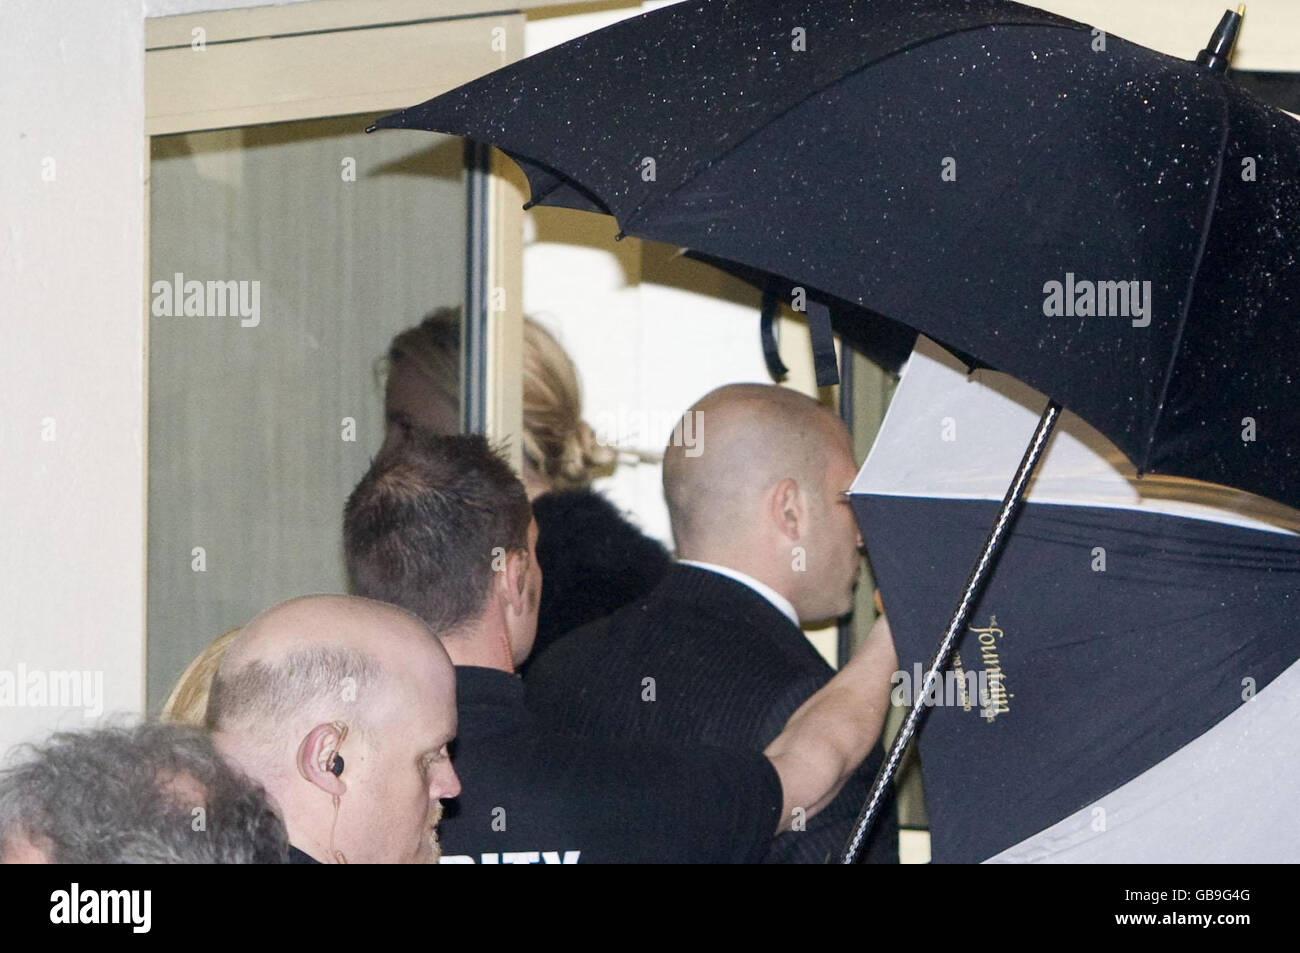 La chanteuse pop Britney Spears arrive aux Fountain Studios à Wembley, Londres, à l'abri de parasols alors qu'elle arrive pour sa performance X Factor. Banque D'Images